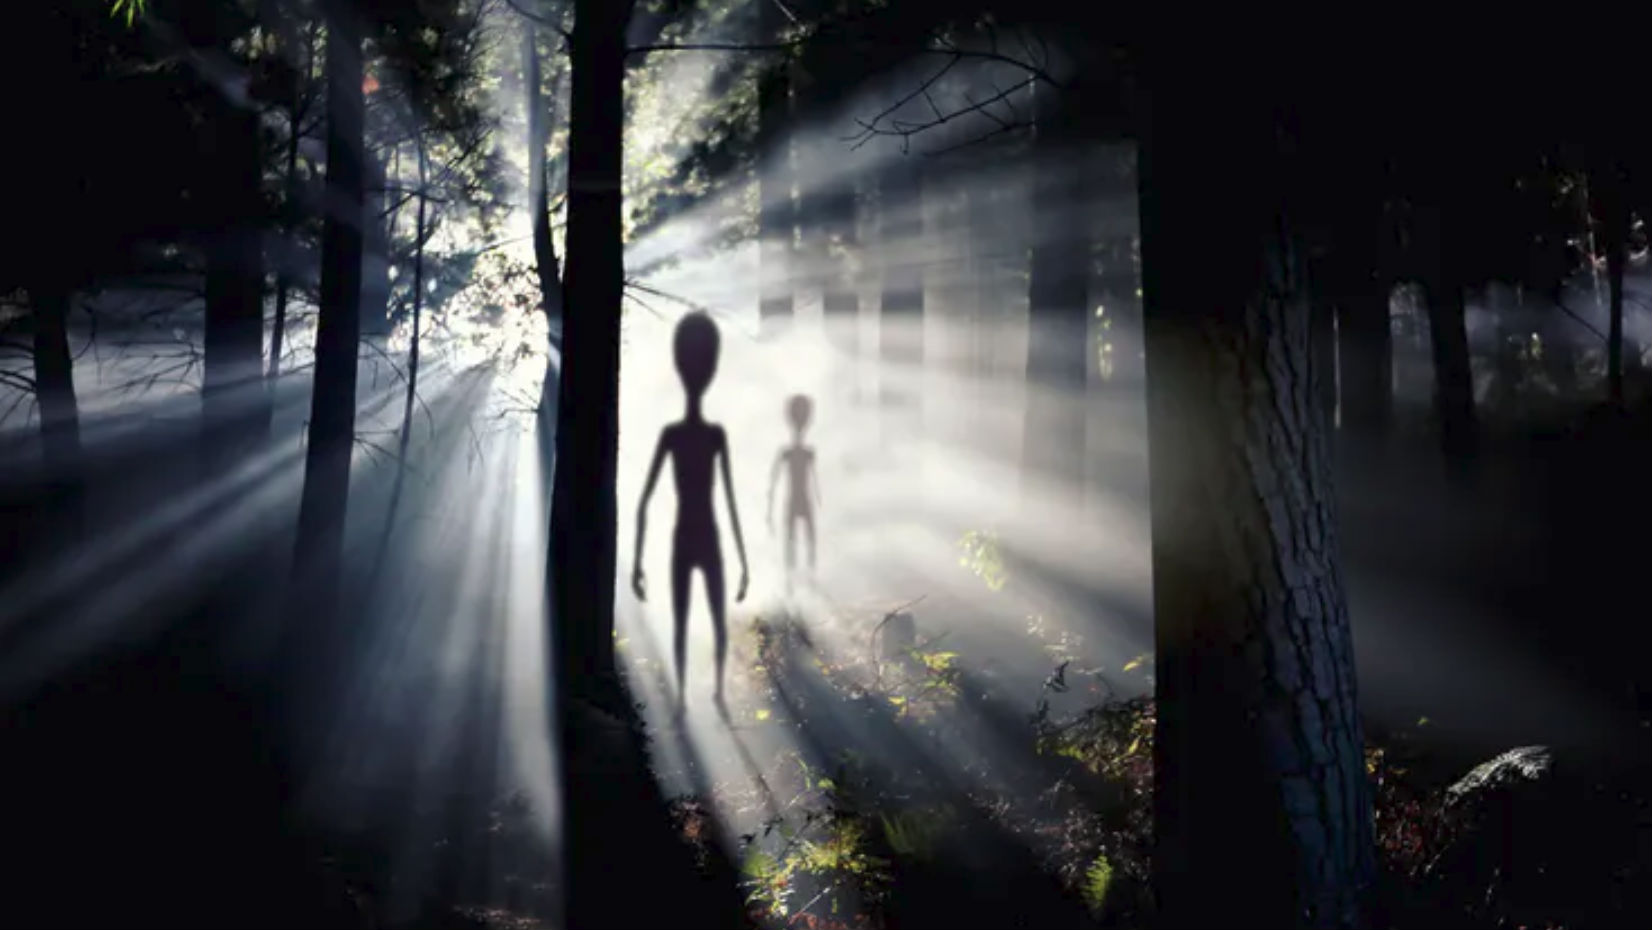 Aliens seen in the woods